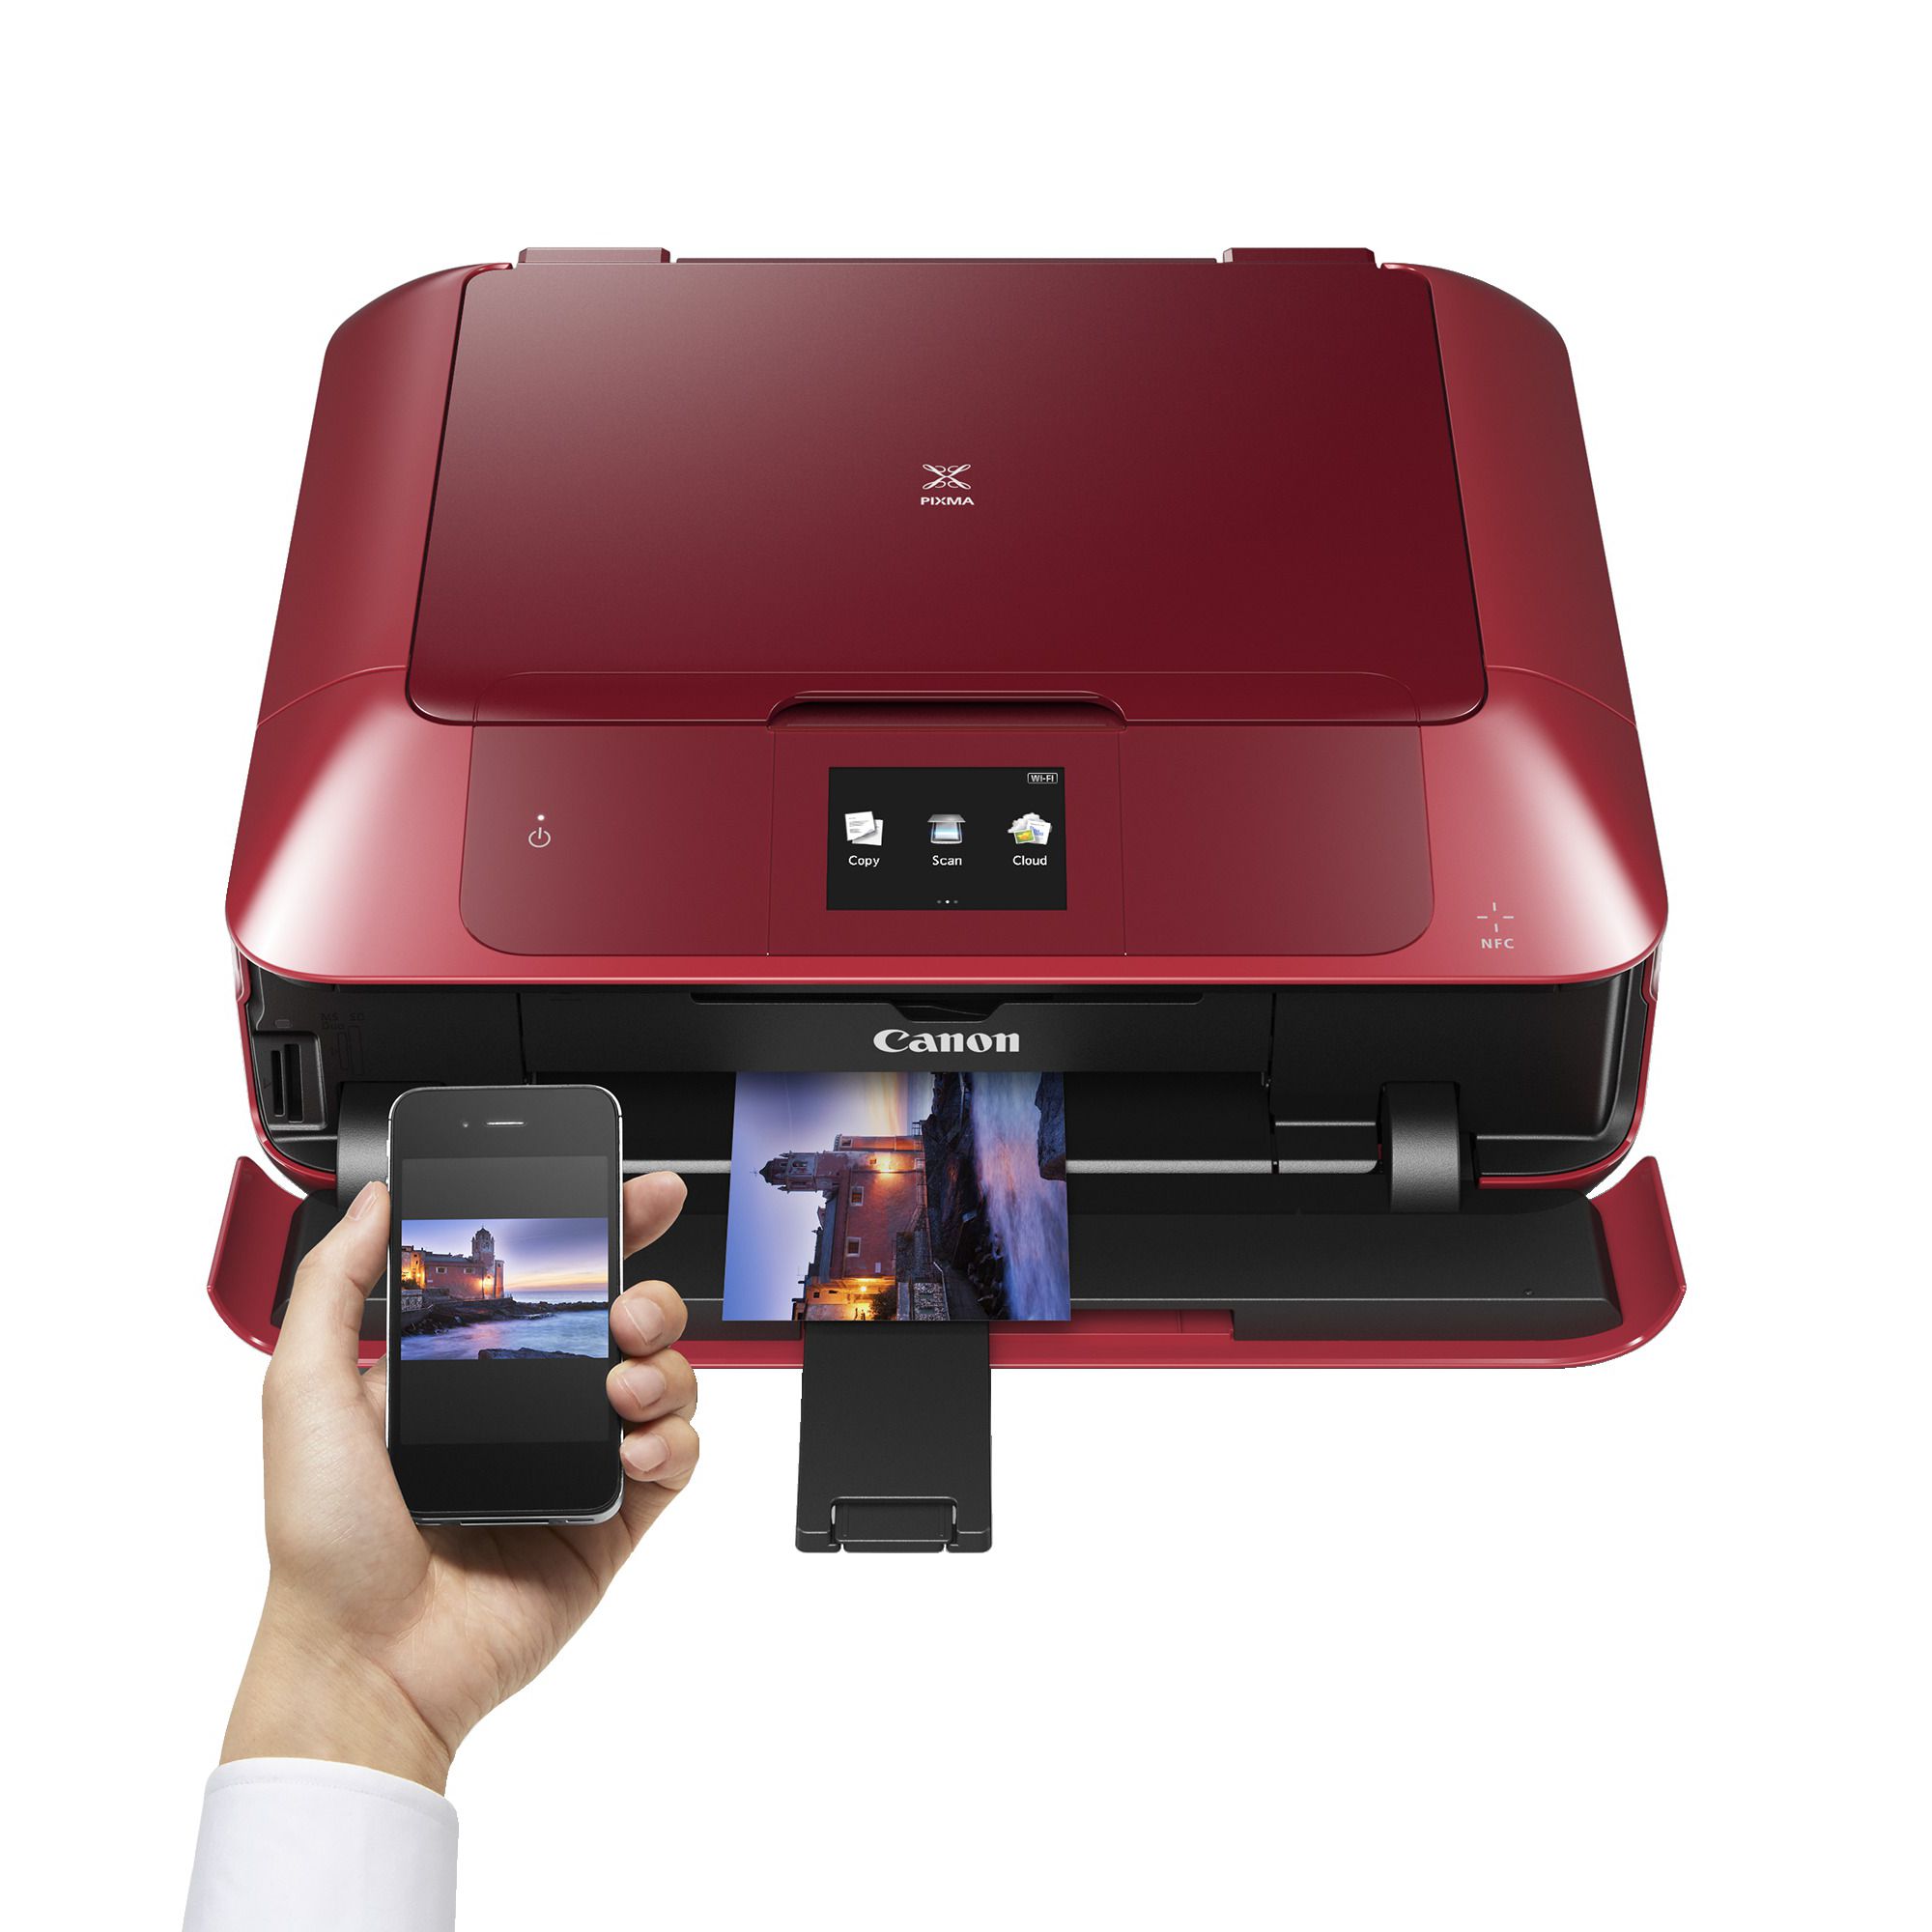 Беспроводной принтер купить. PIXMA mx330. Если не подает красный цвет принтер.